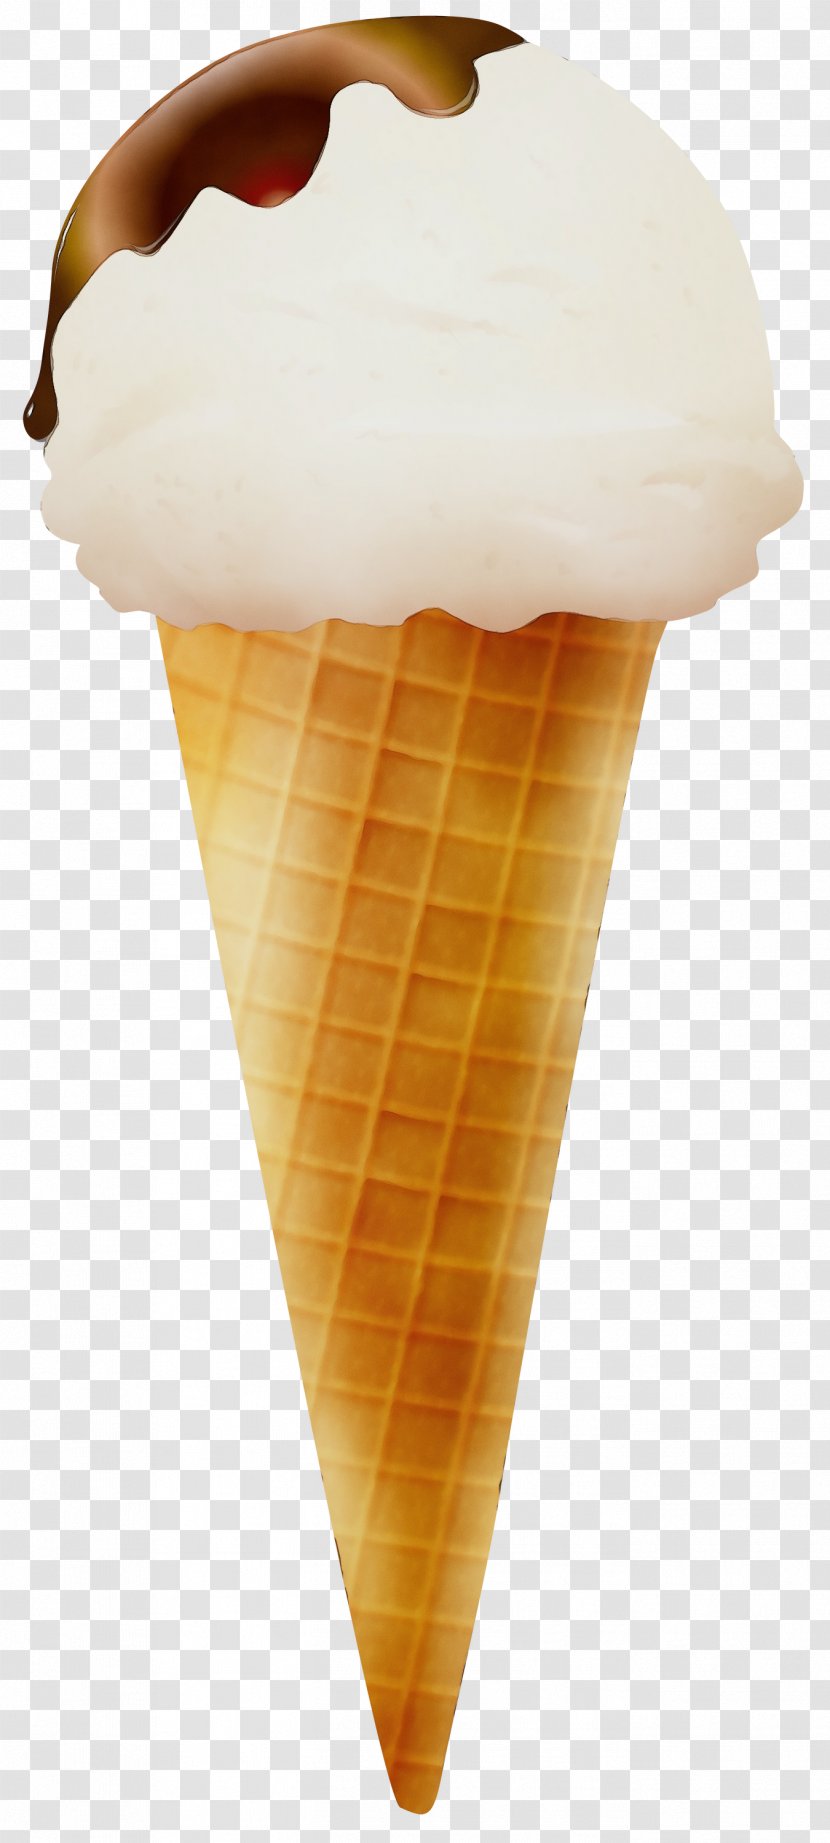 Ice Cream Cone Background - Cones - Ingredient Transparent PNG